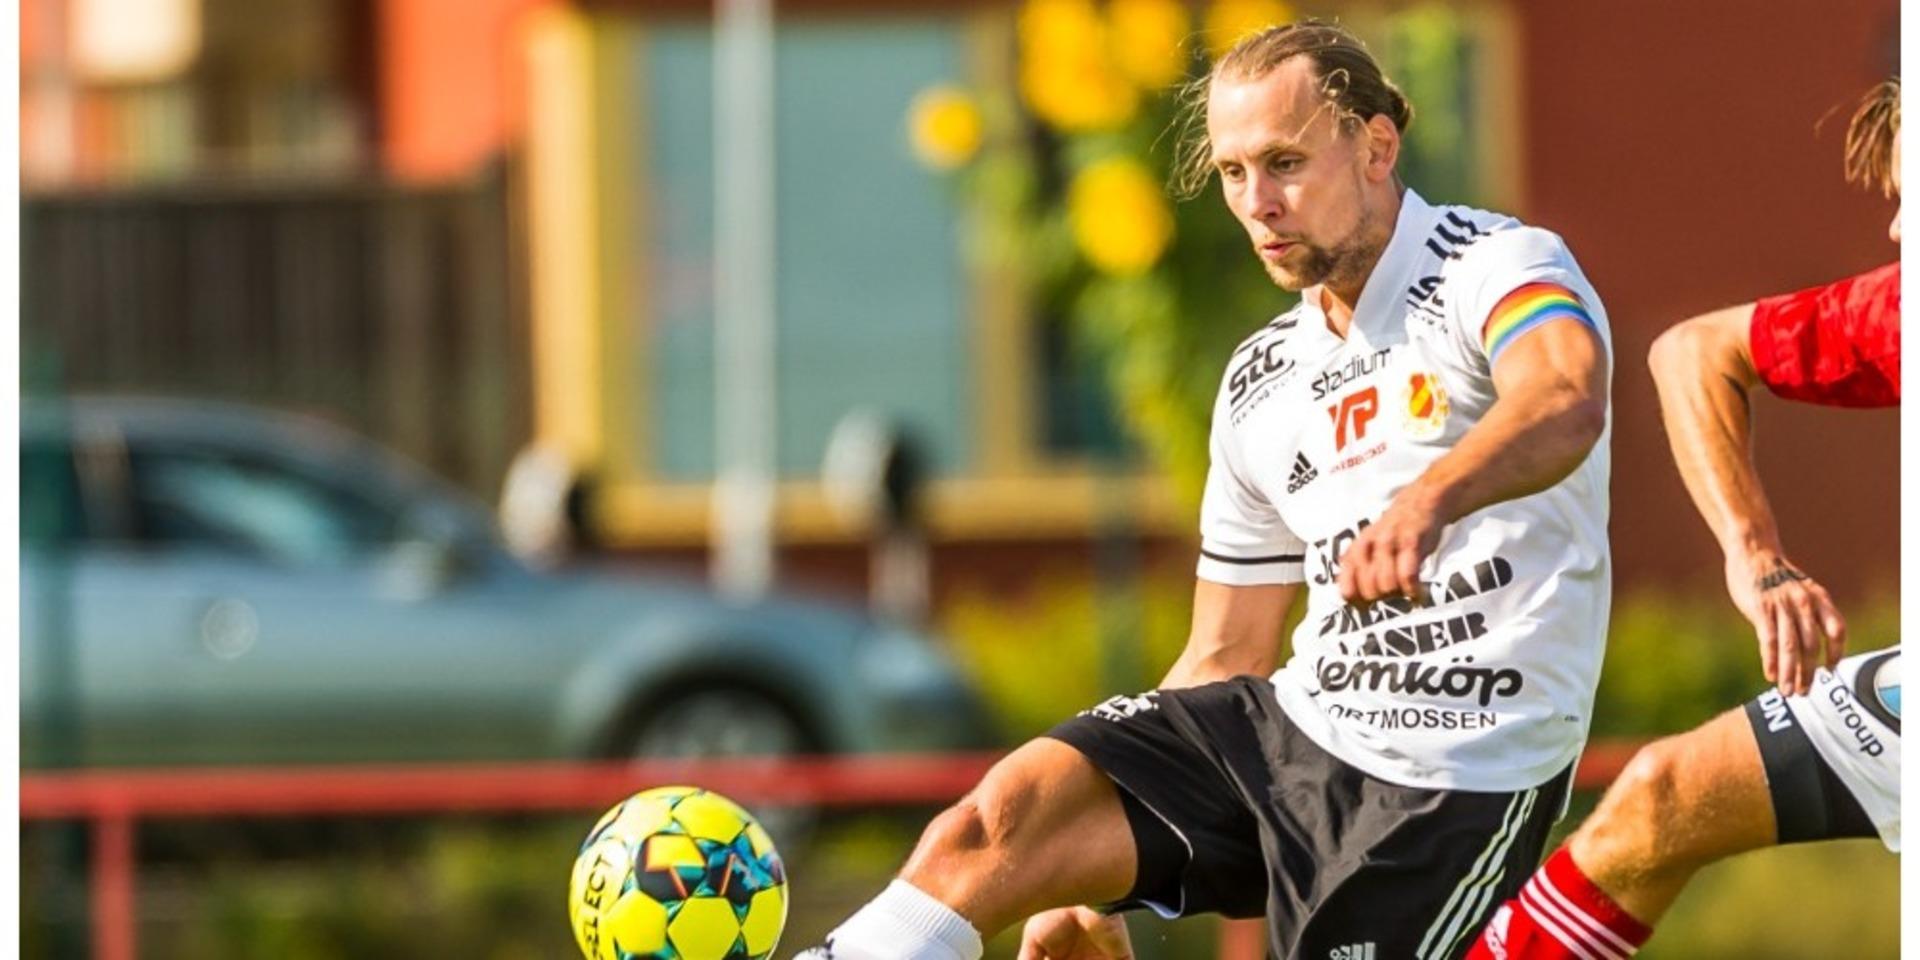 Krister Andersson nöjde sig med att spela en halvlek i mötet med IFK Hjo, redan i paus var ställningen 3-0 och då klev Krister av.